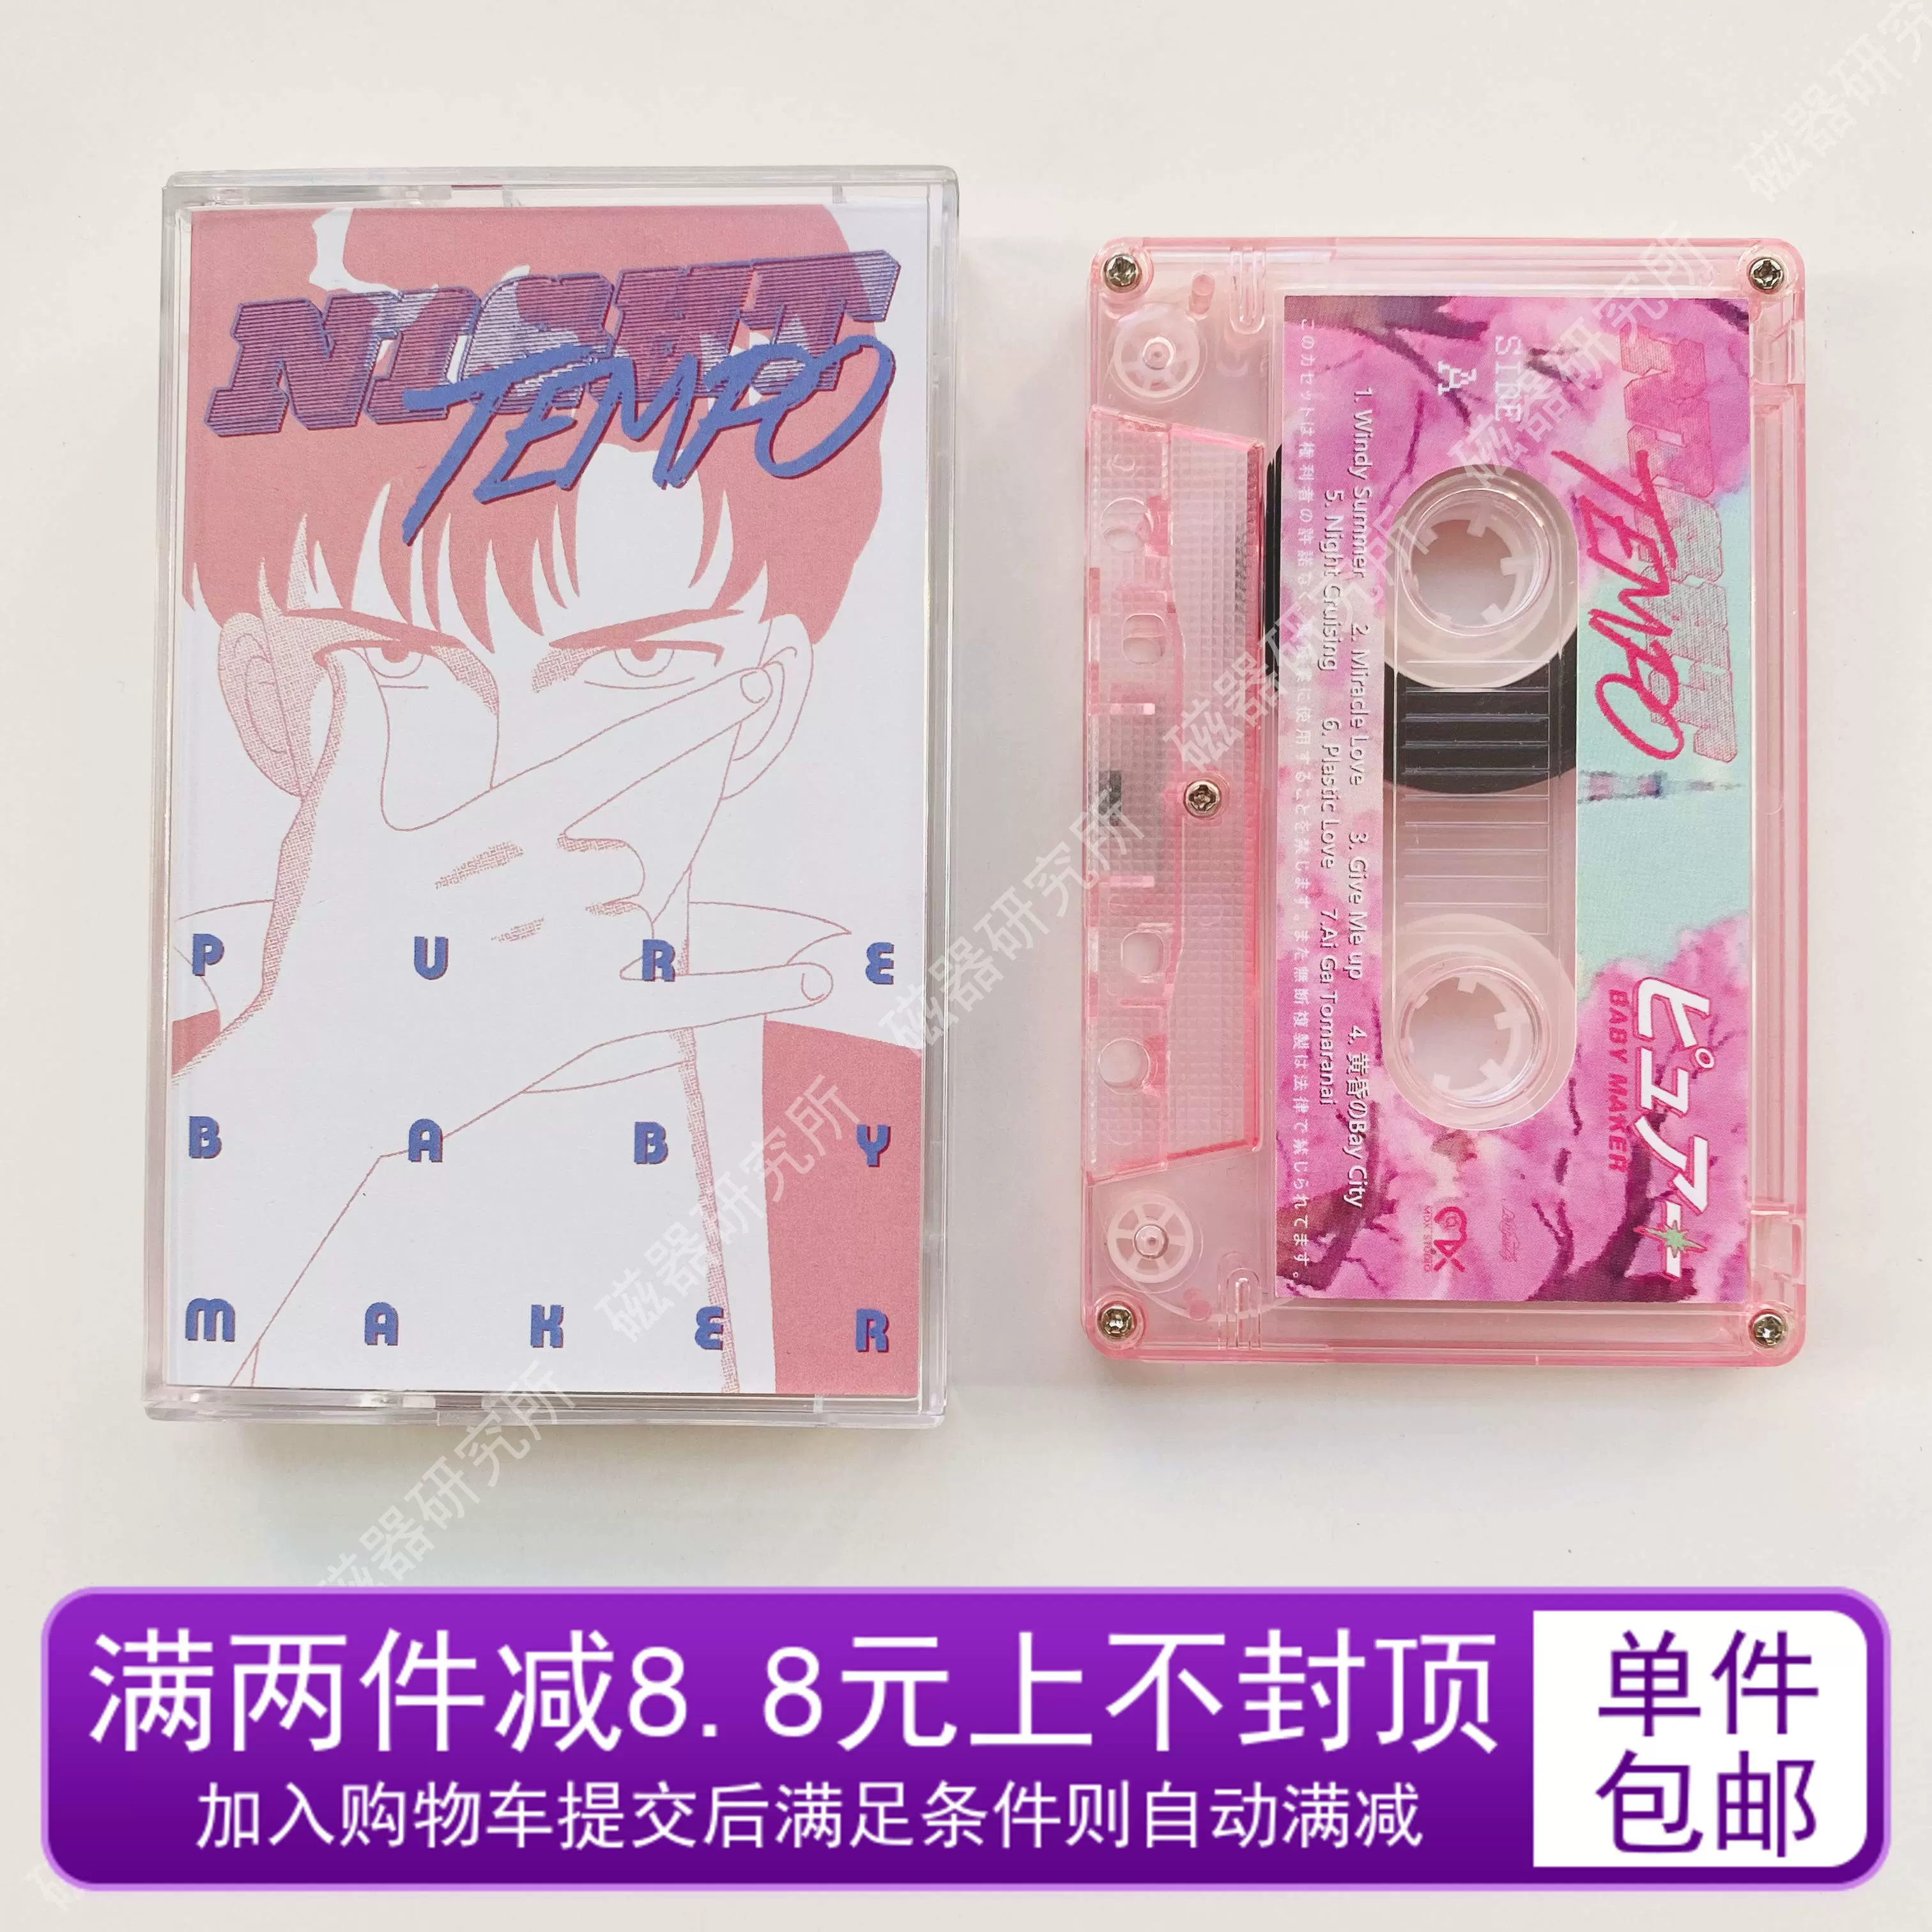 蒸汽波Night Tempo专辑磁带PURE BABY MAKER全新礼品十品包邮-Taobao